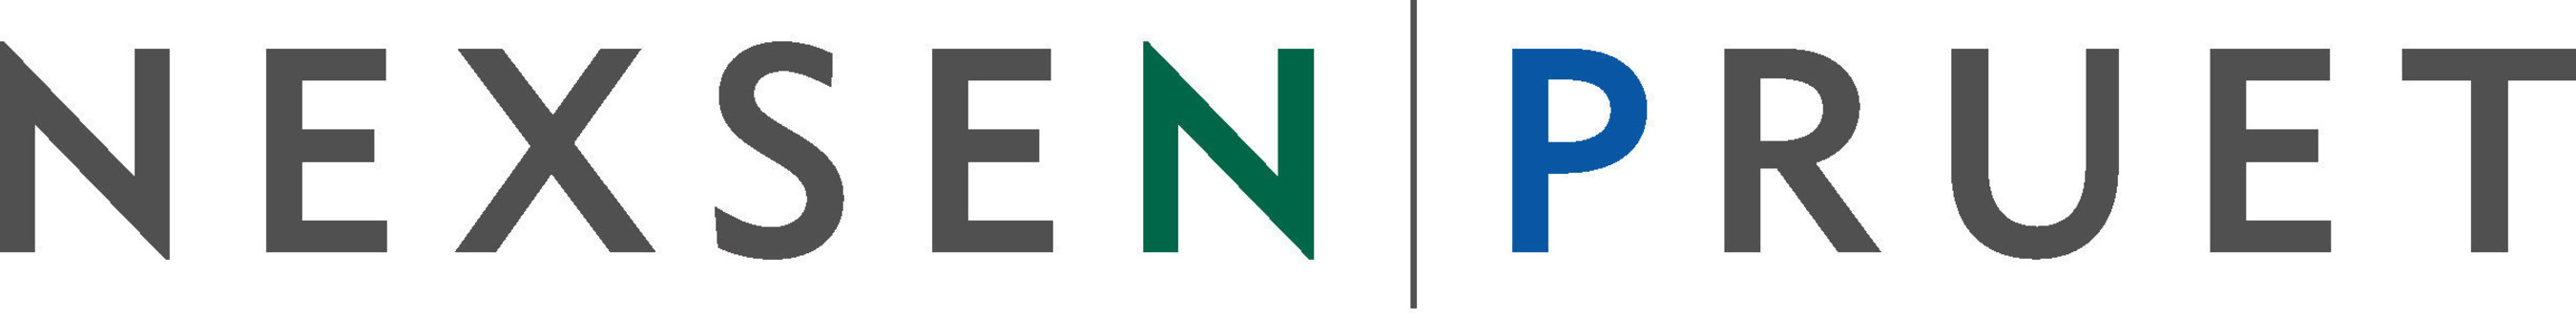 Nexsen Pruet logo